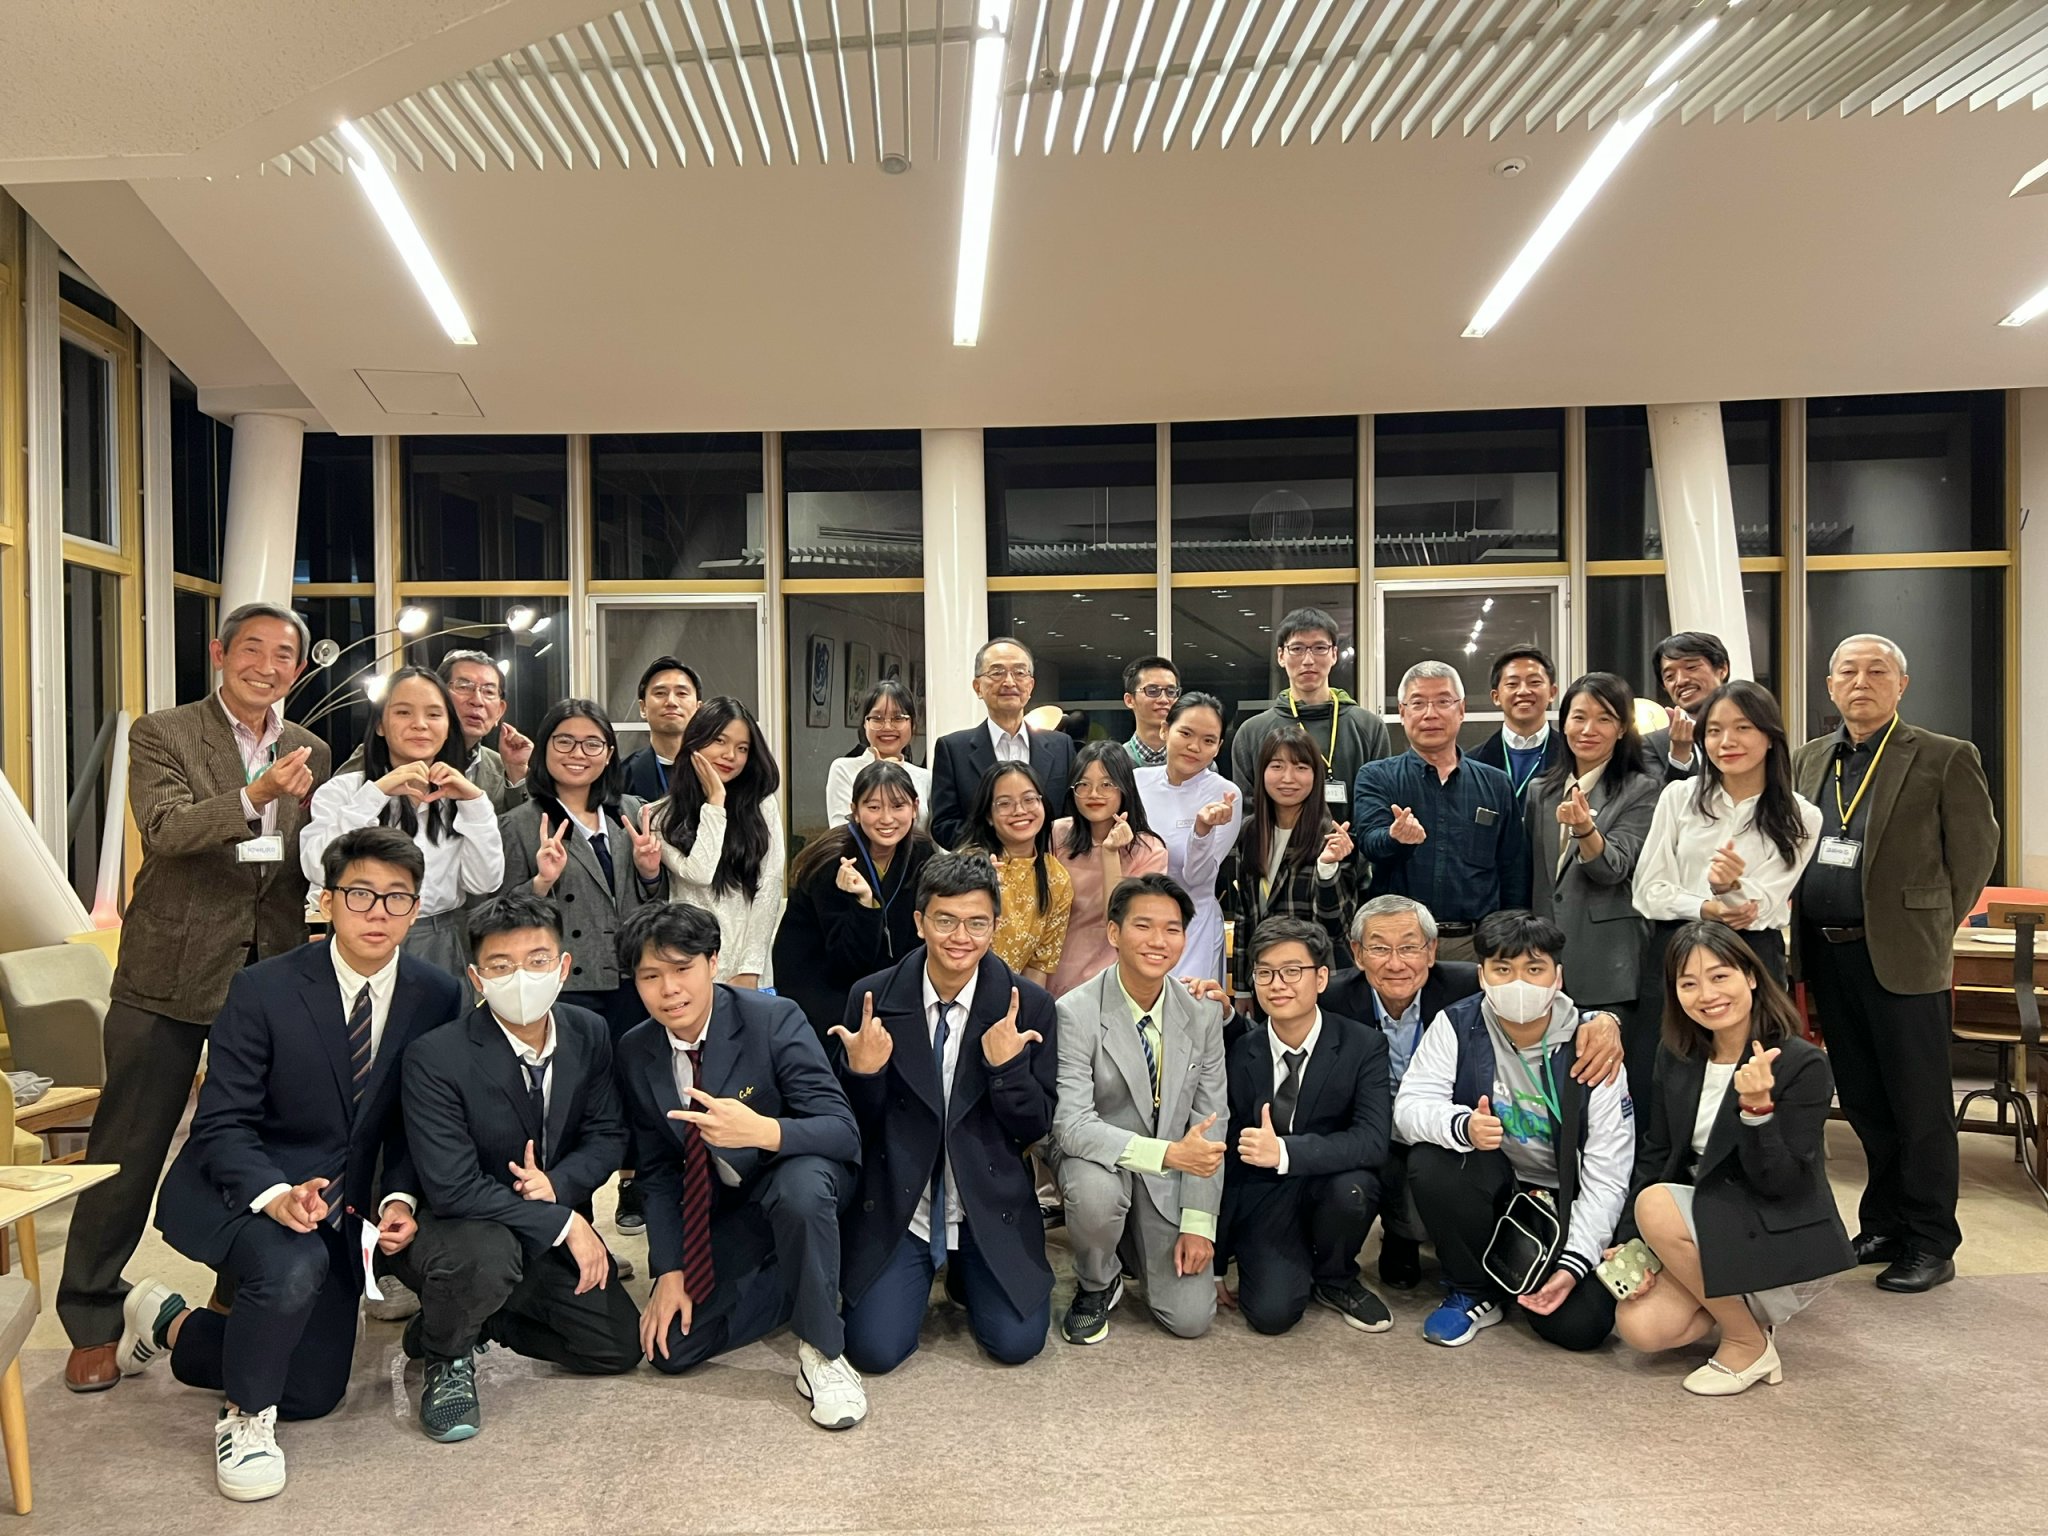 Giao lưu thanh niên về khoa học và công nghệ (SAKURA) tại Tokyo, Nhật Bản